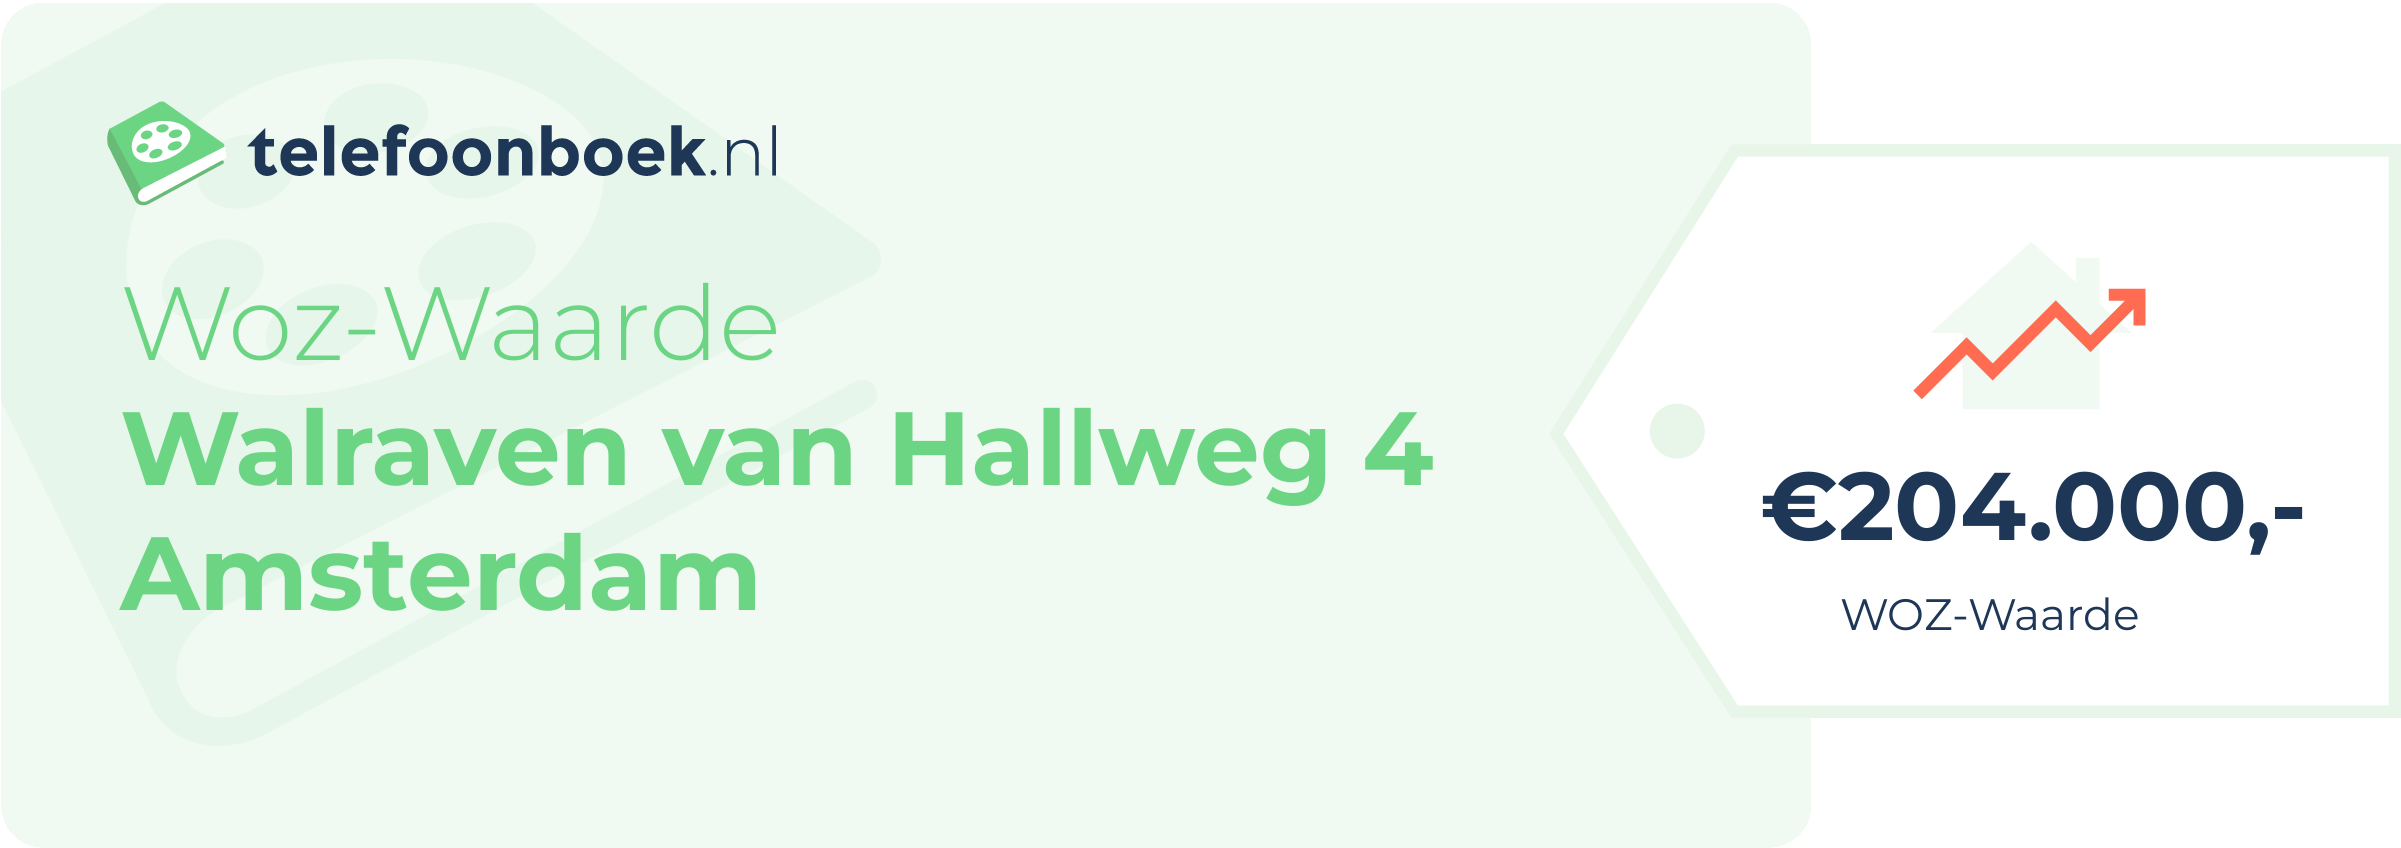 WOZ-waarde Walraven Van Hallweg 4 Amsterdam